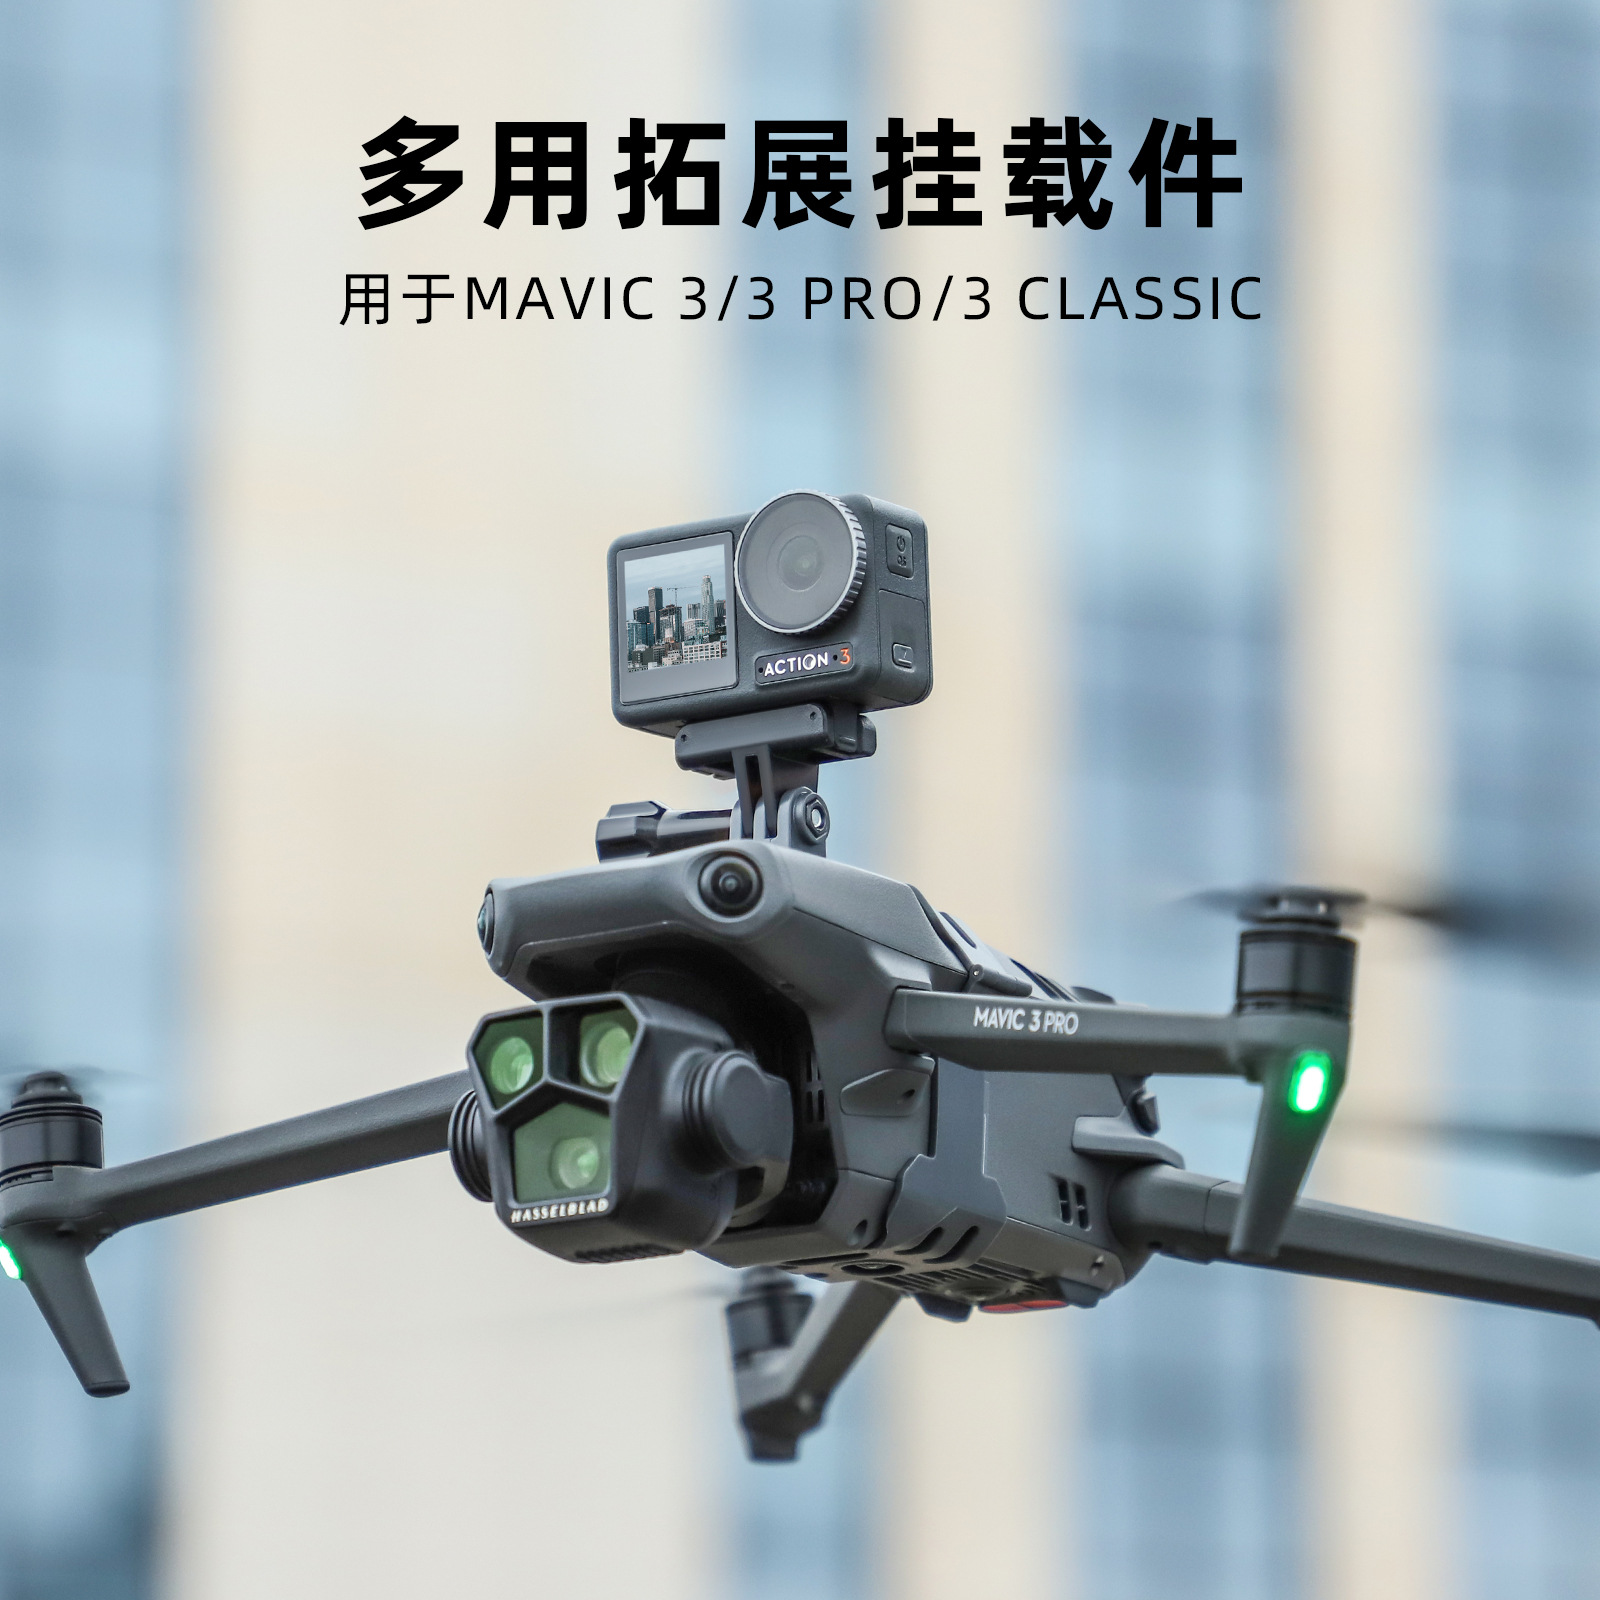 新品大疆DJI Mavic3 Pro挂载御3Classic探照灯Insta360X3相机支架